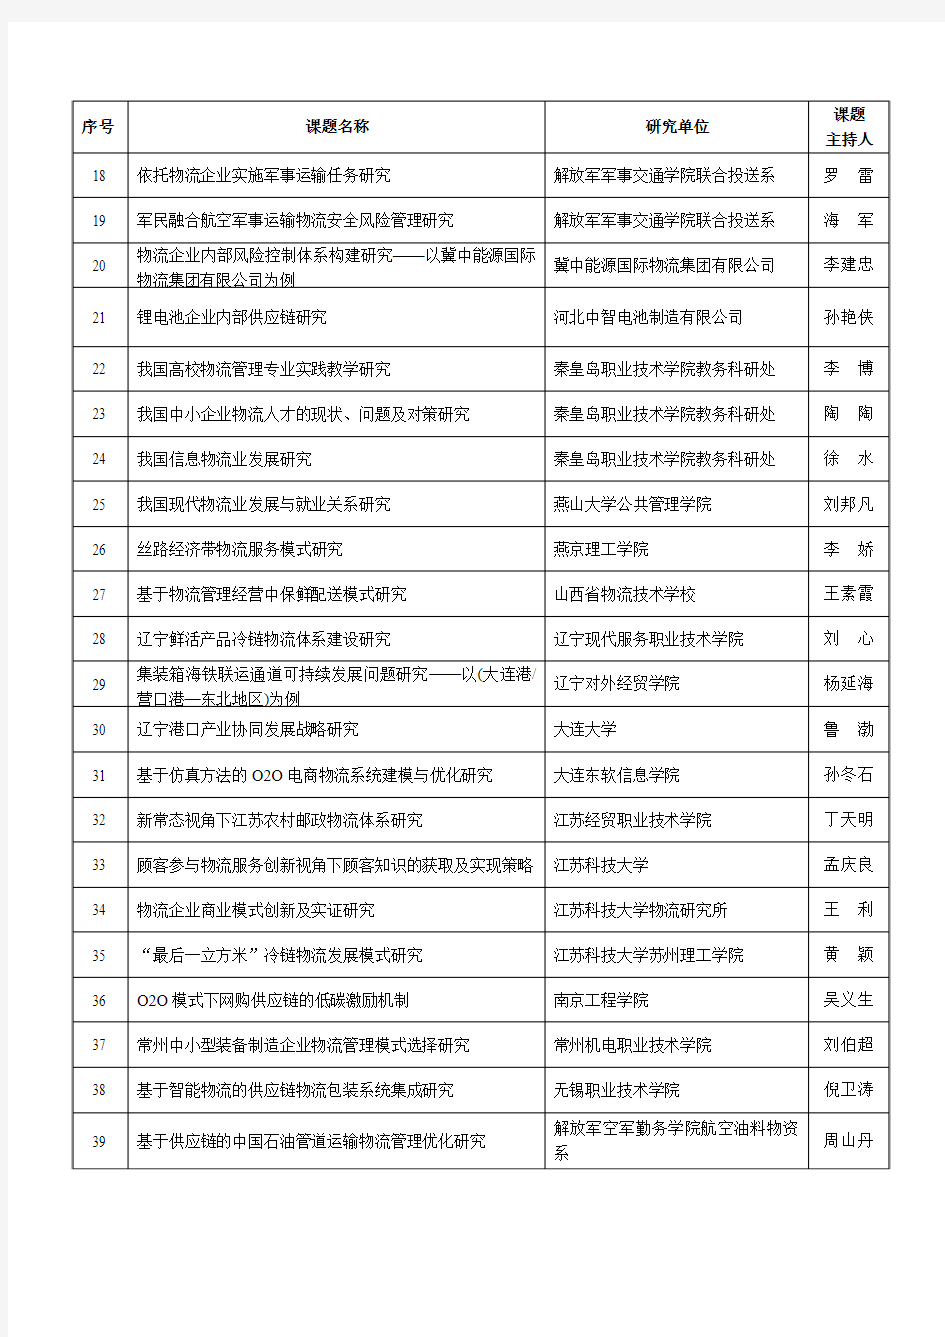 2015年中国物流学会(面上课题)研究课题计划